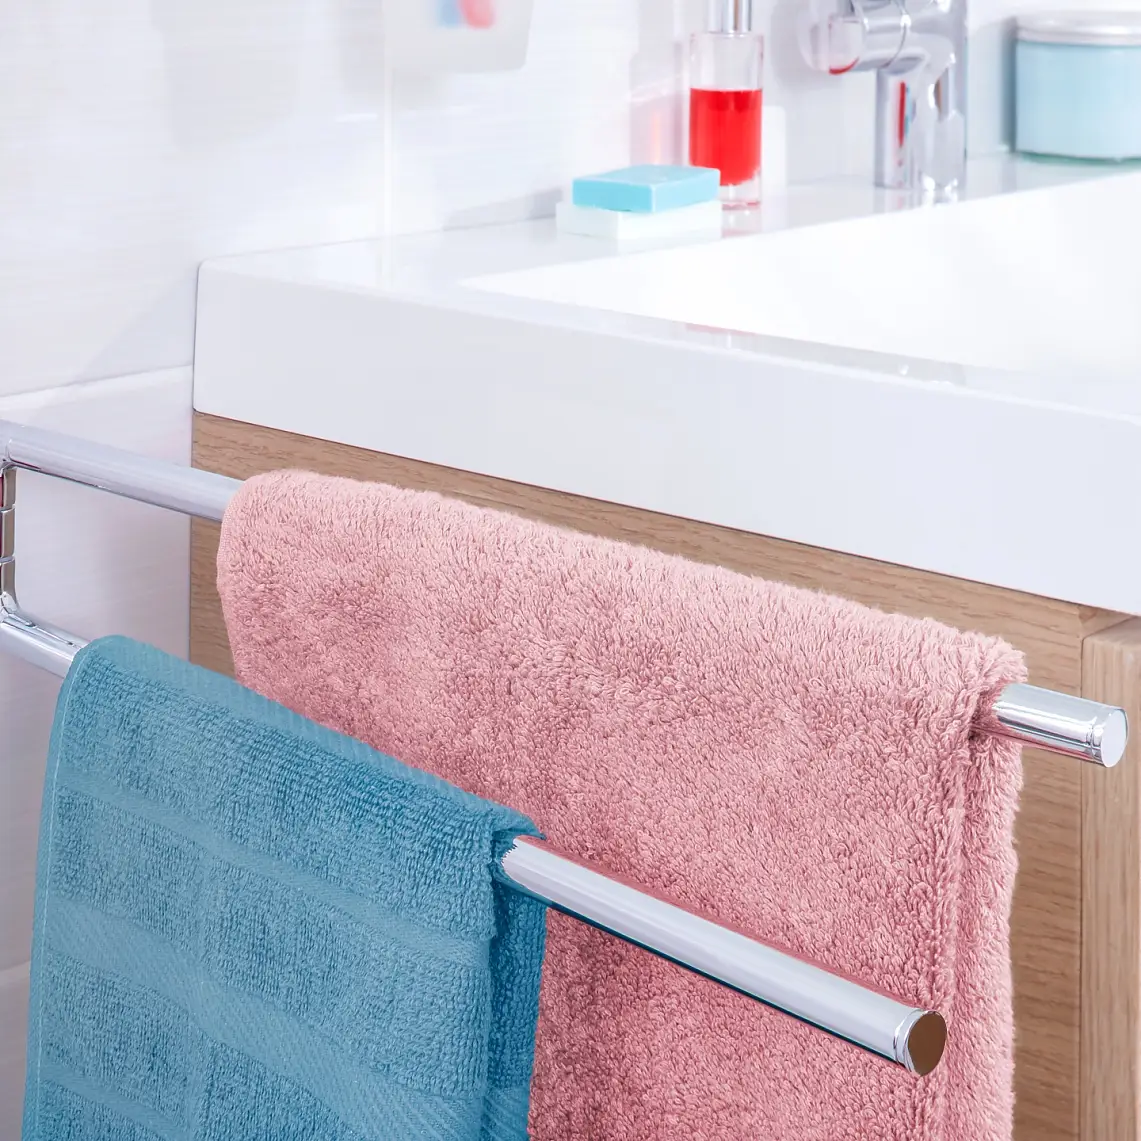 Gardez vos serviettes de toilette là où vous en avez besoin et offrez-leur un espace pour sécher après utilisation.